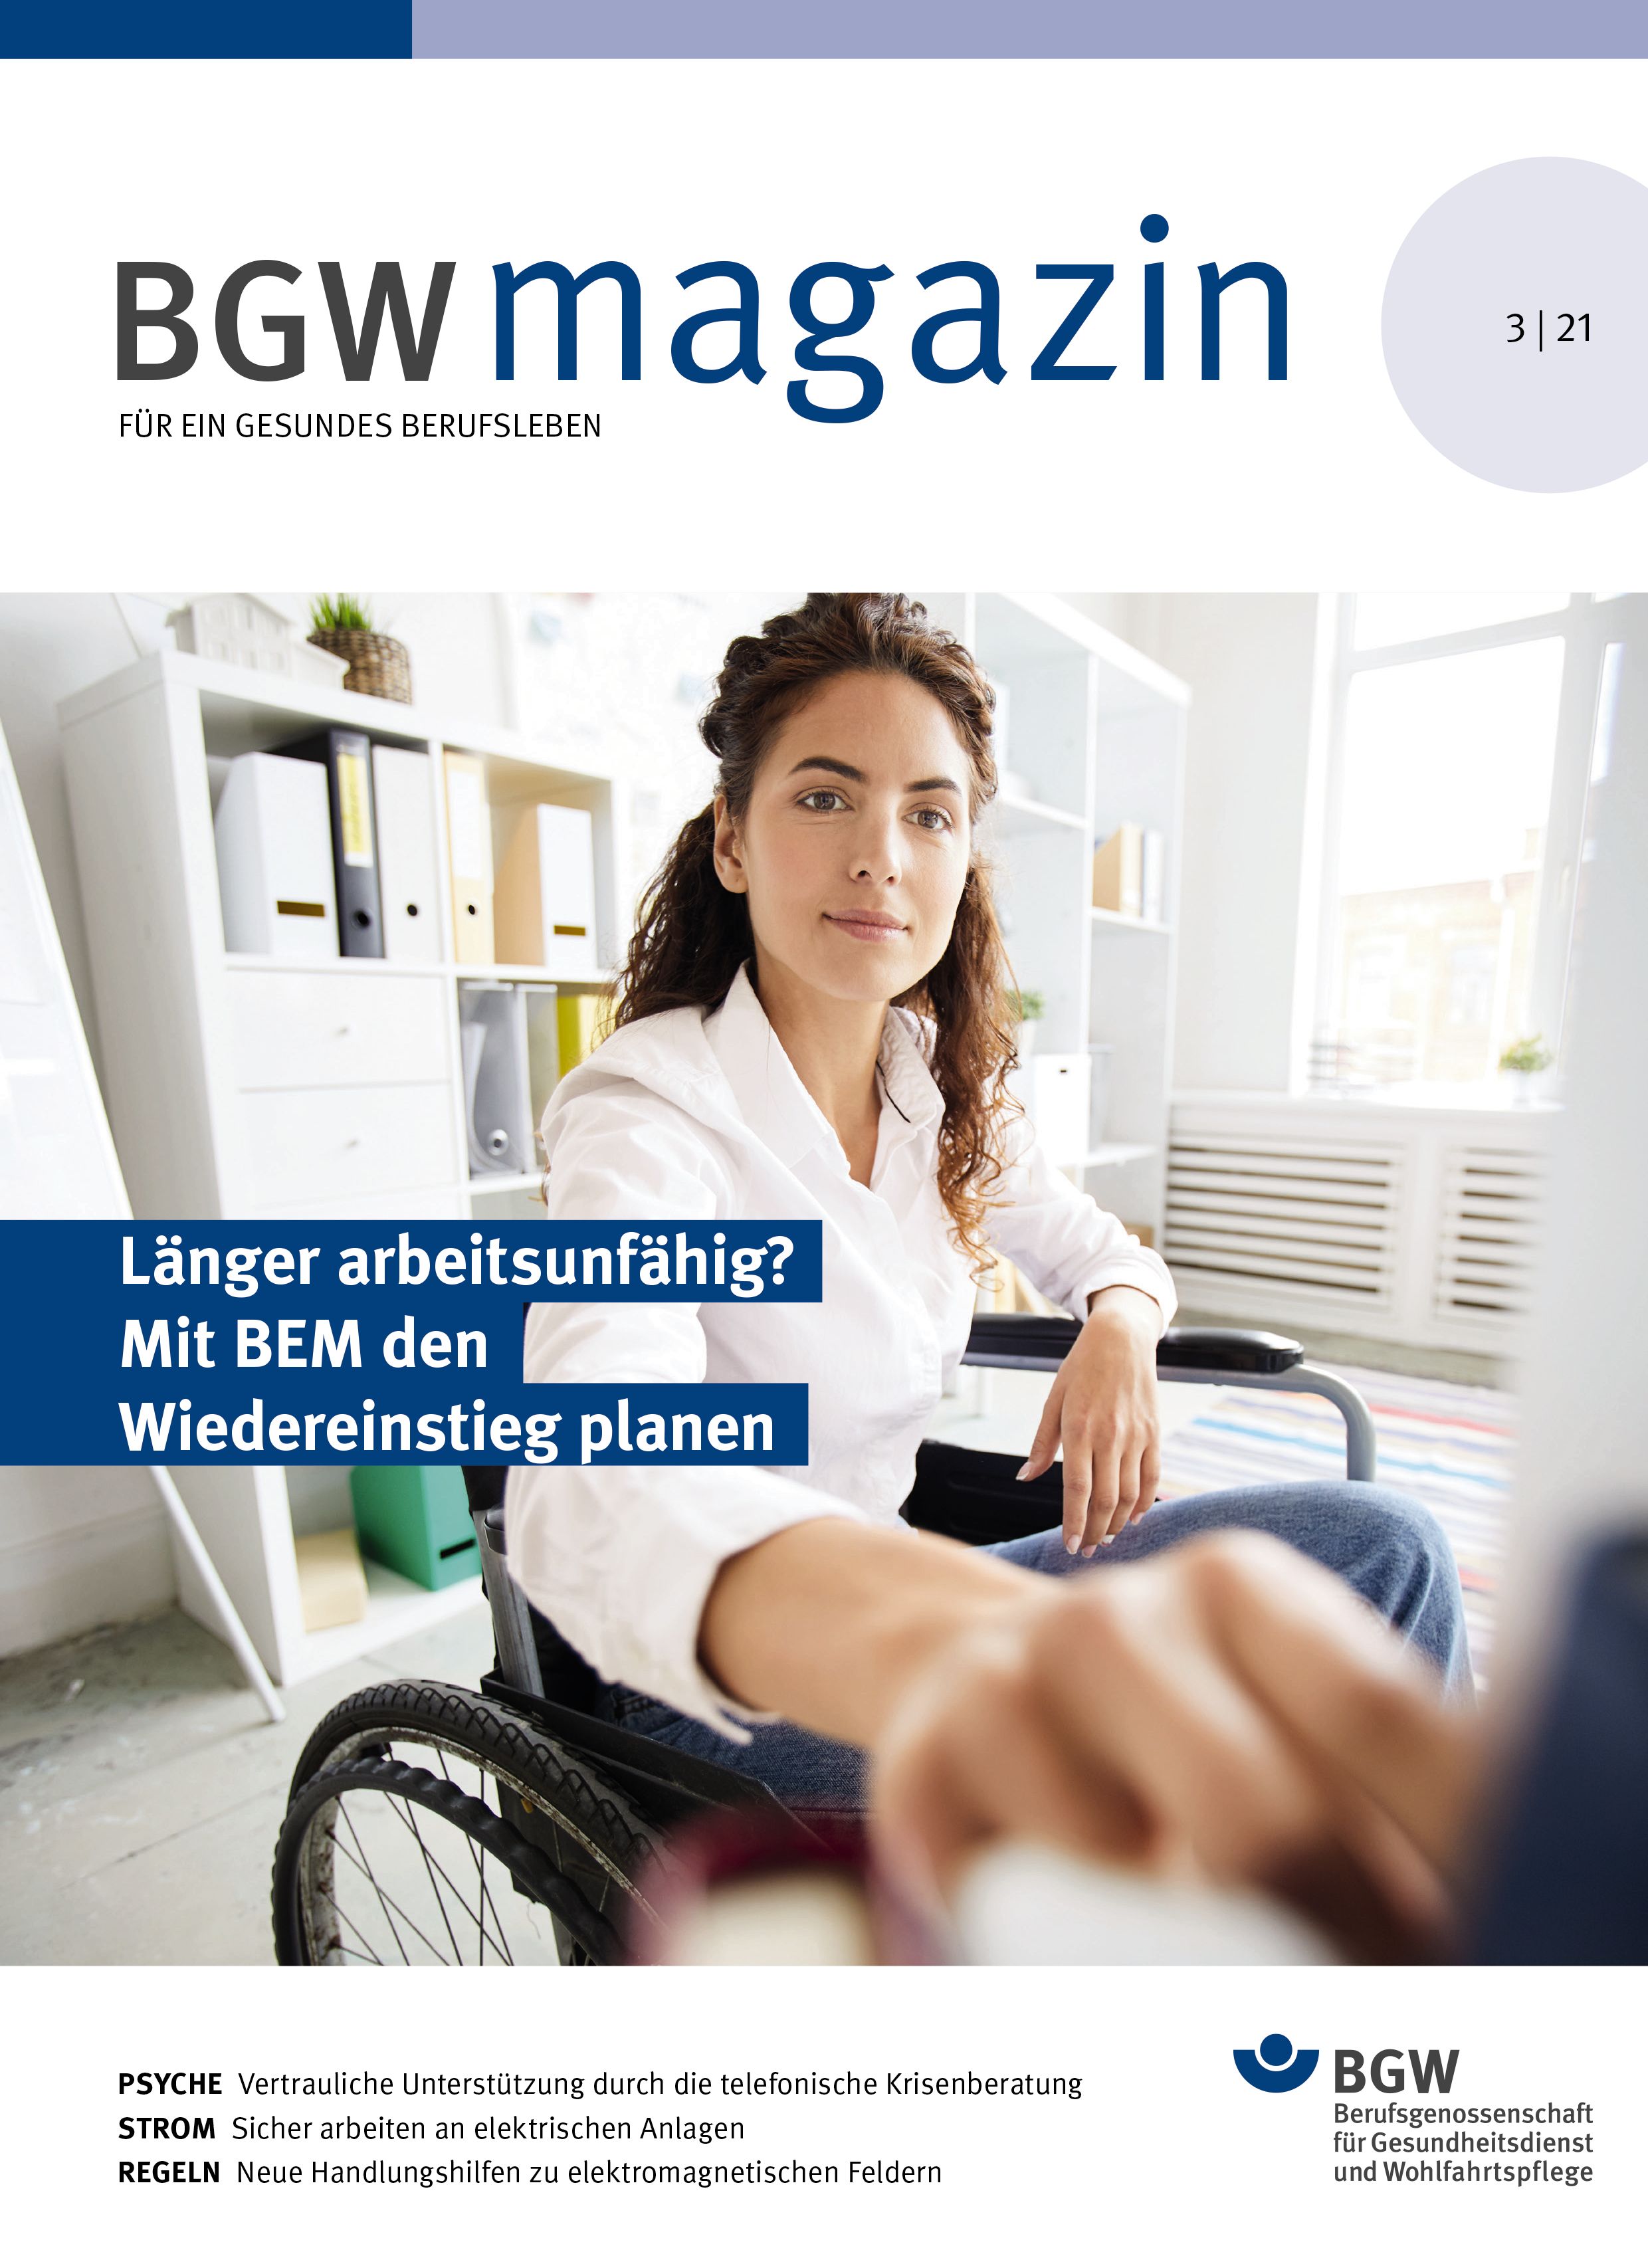 Titelseite BGW magazin 3/2021, mit dem Titelthema "Länger arbeitsunfähig? Mit BEM den Wiedereinstieg planen"